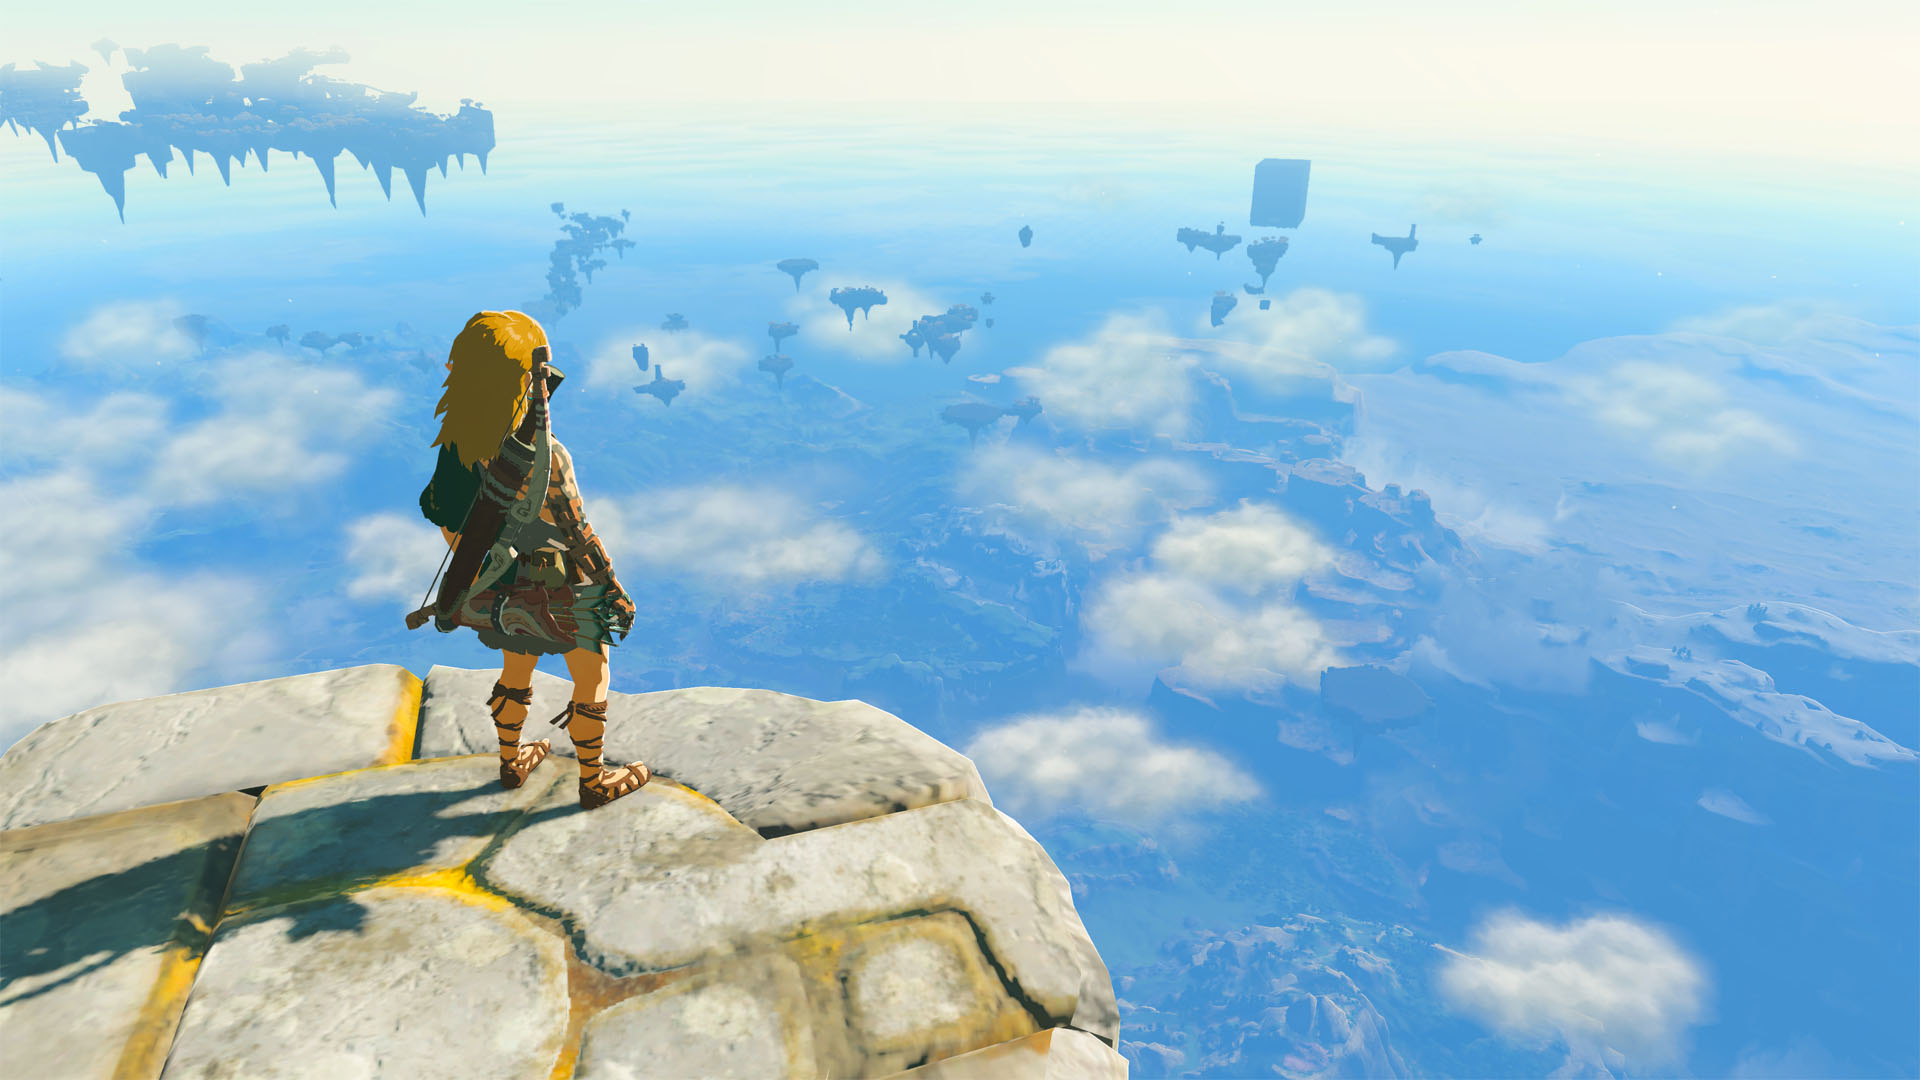 The Legend of Zelda: Link's Awakening Reviews - OpenCritic